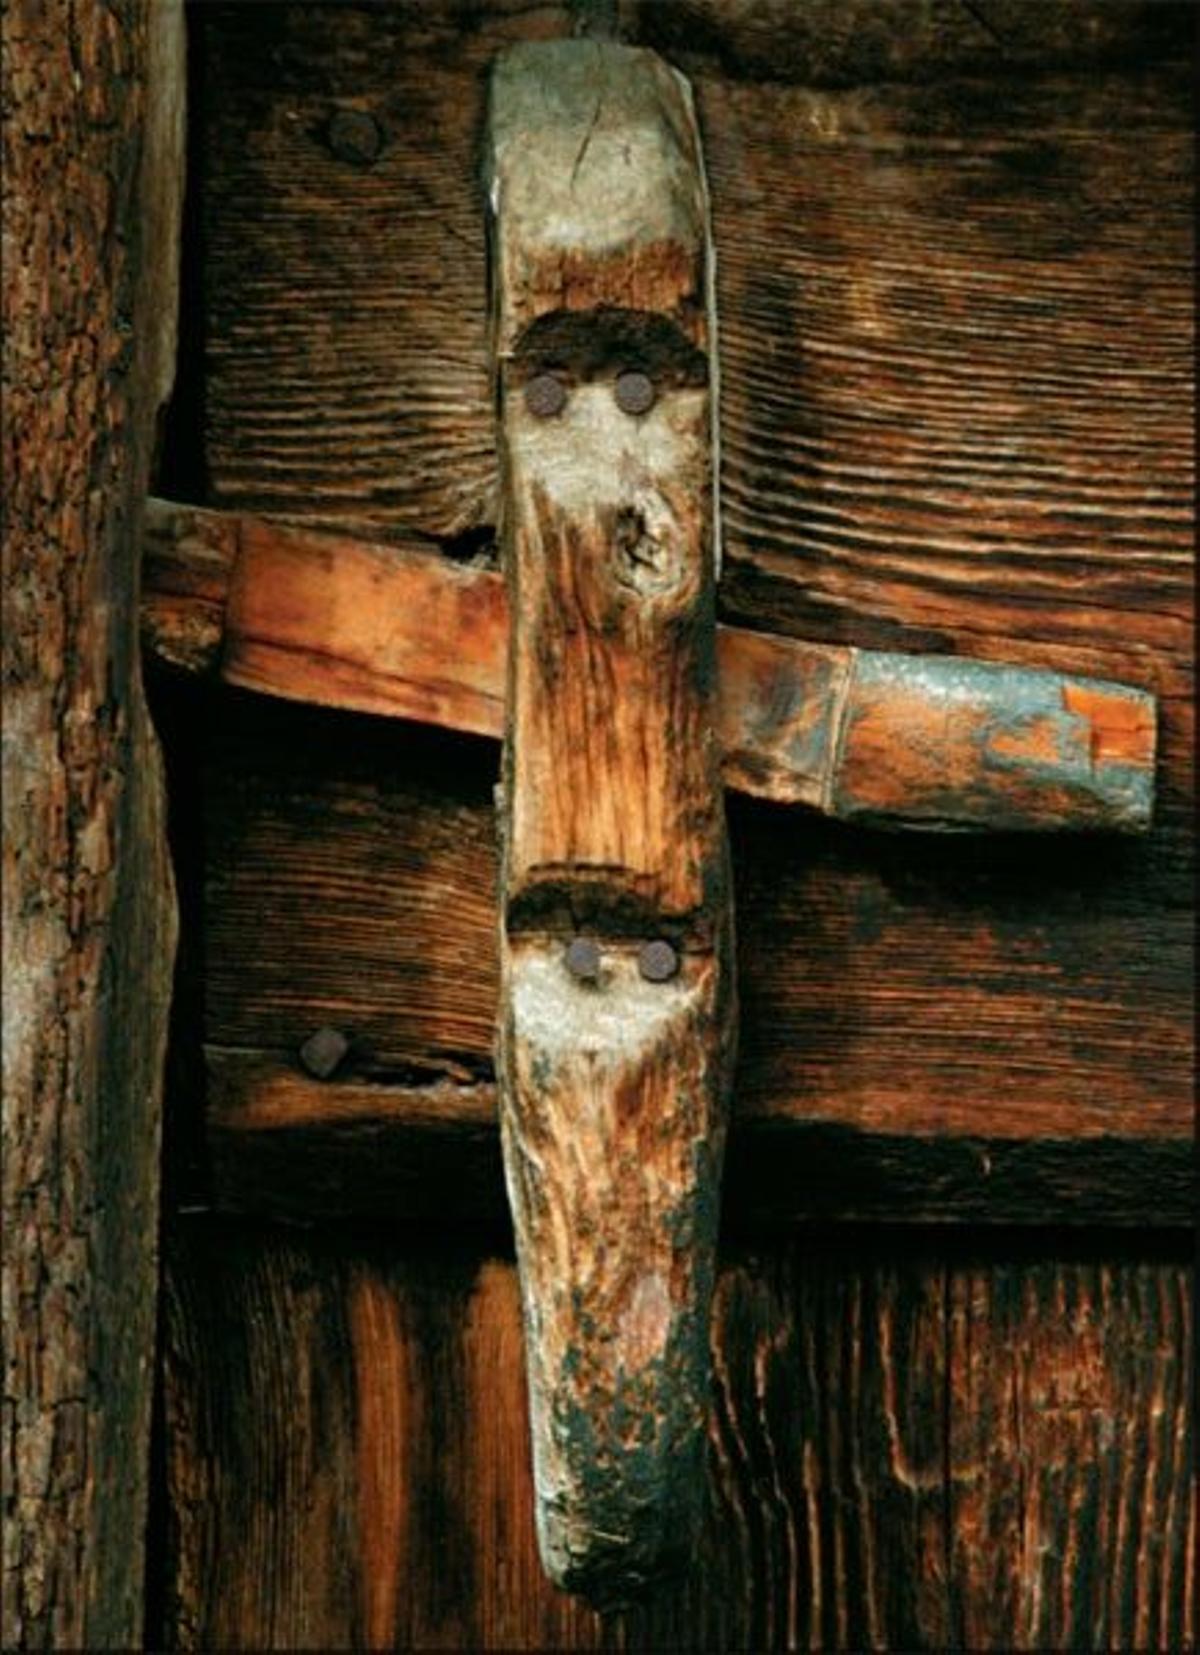 Detalle de una cerradura típica de madera.